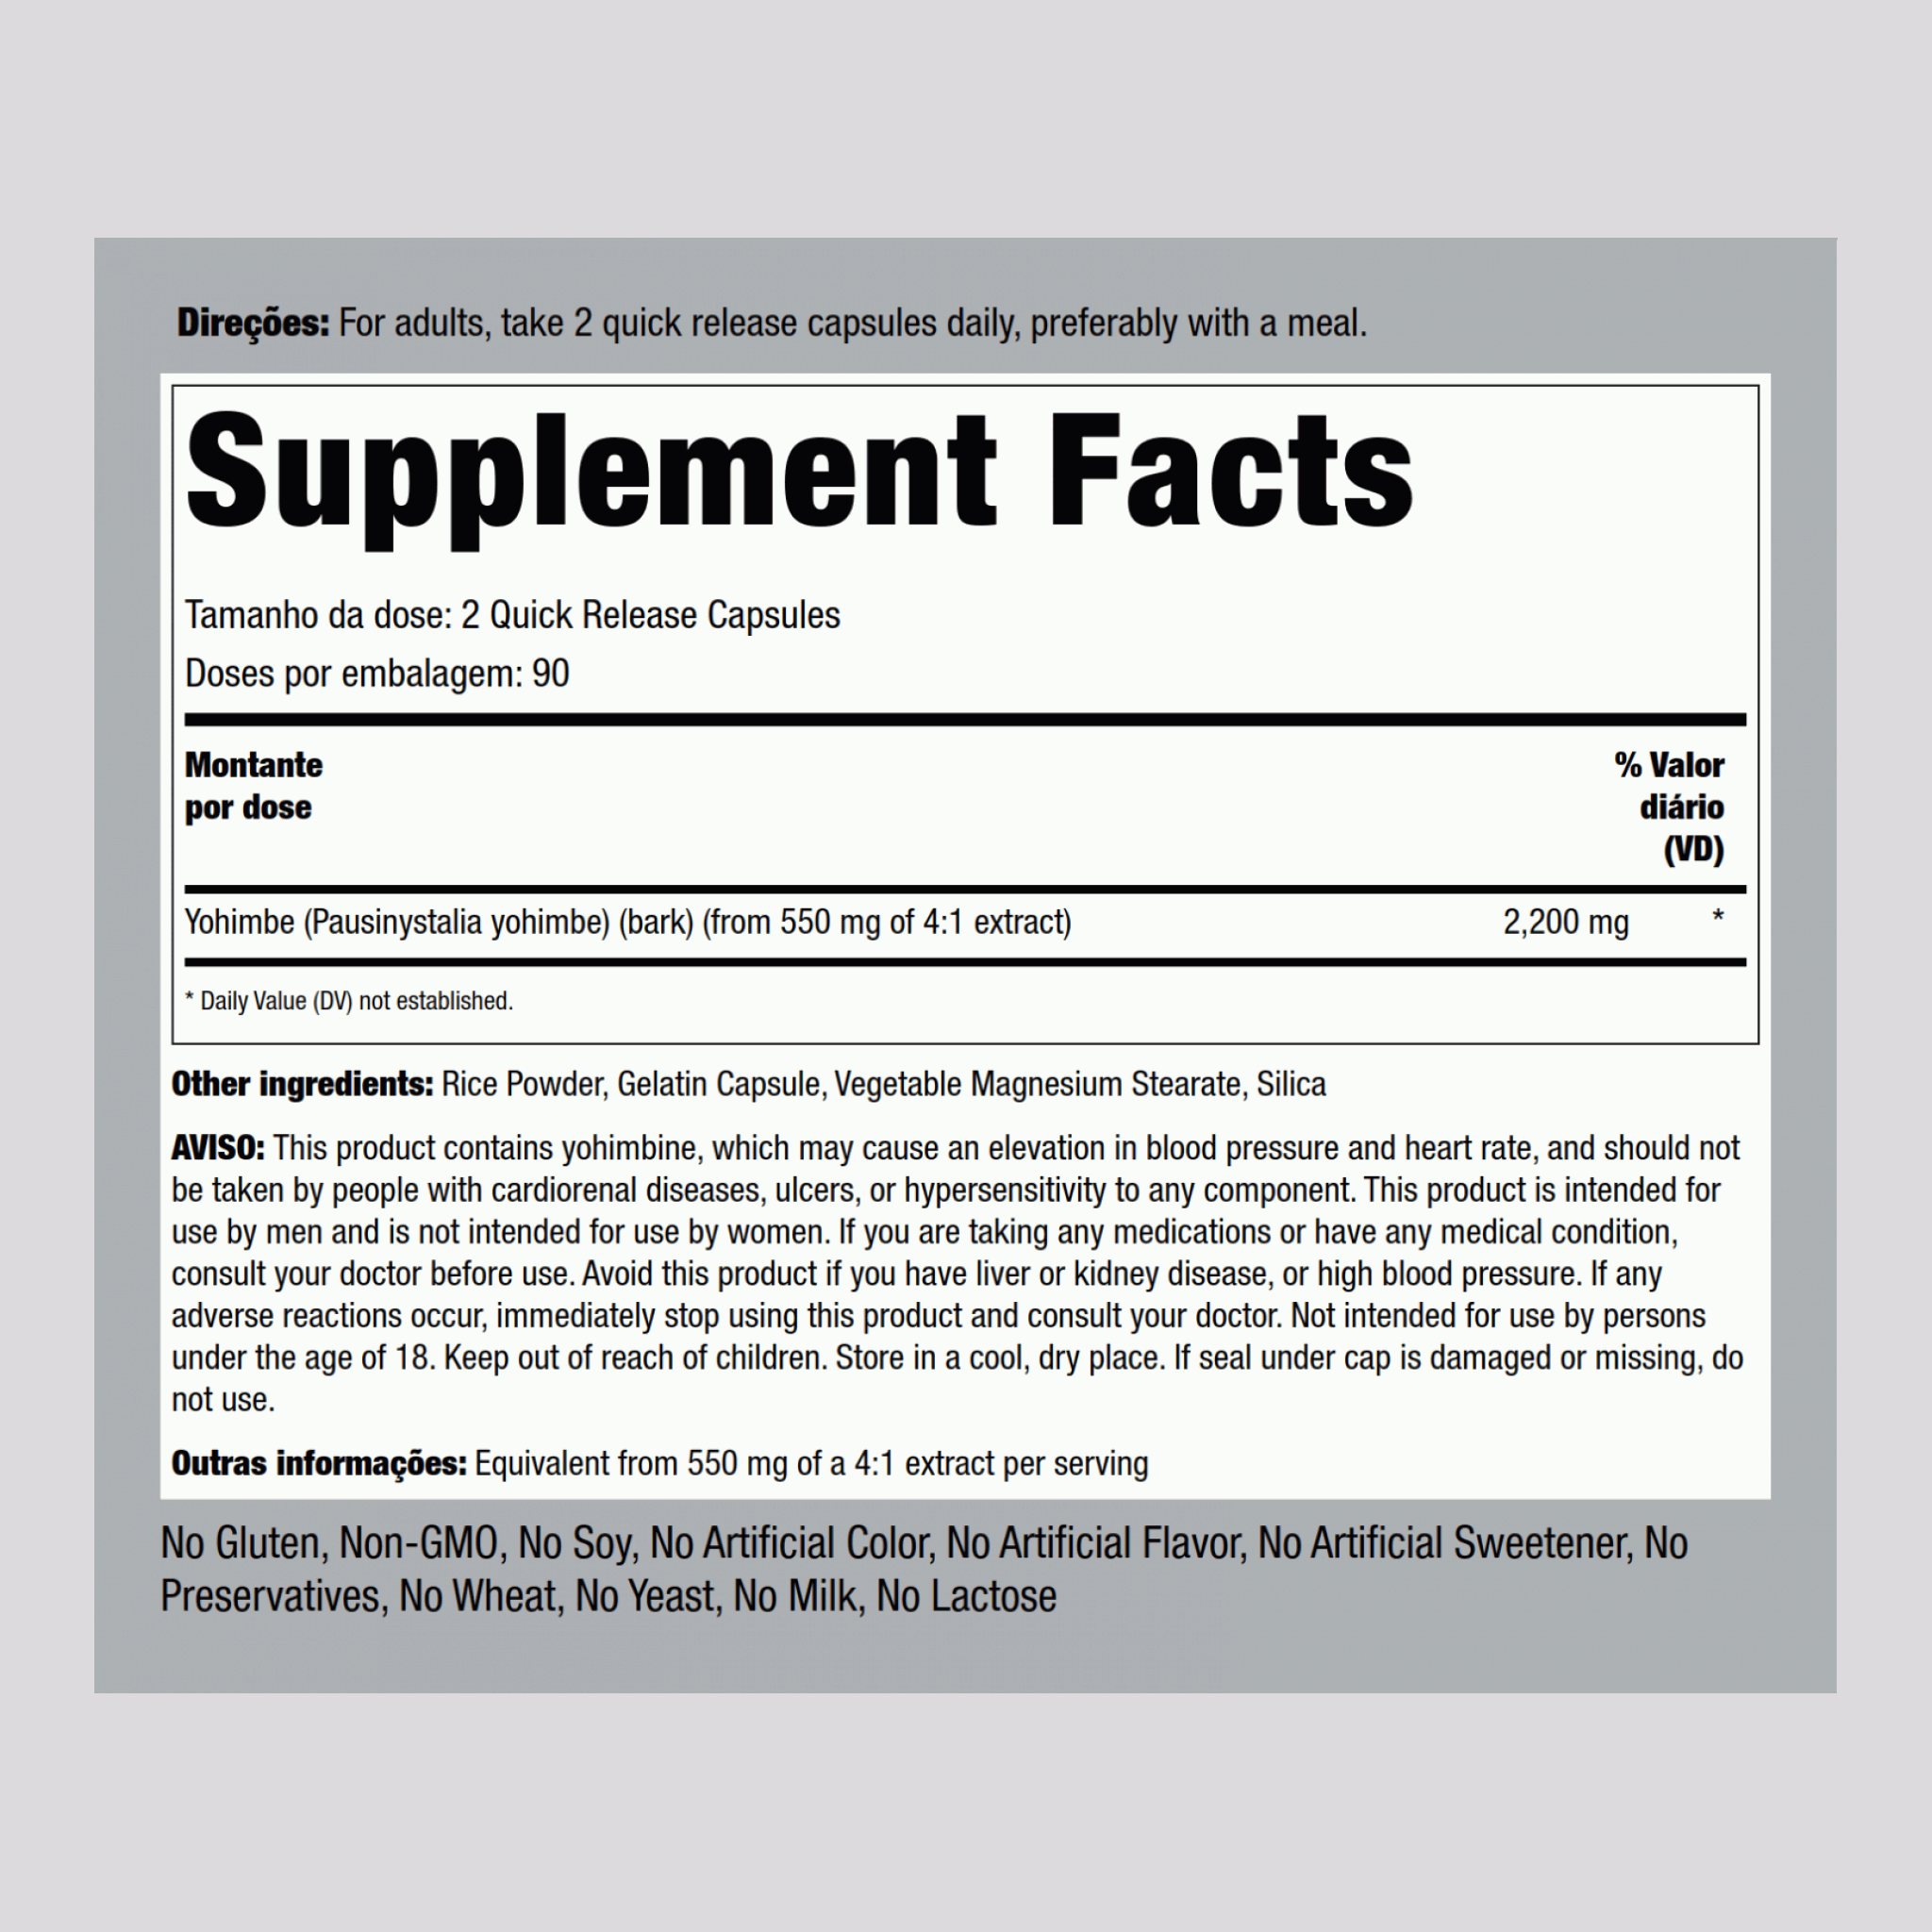 Super Yohimbe Max 2200 2200 mg (por dose) 180 Cápsulas de Rápida Absorção     